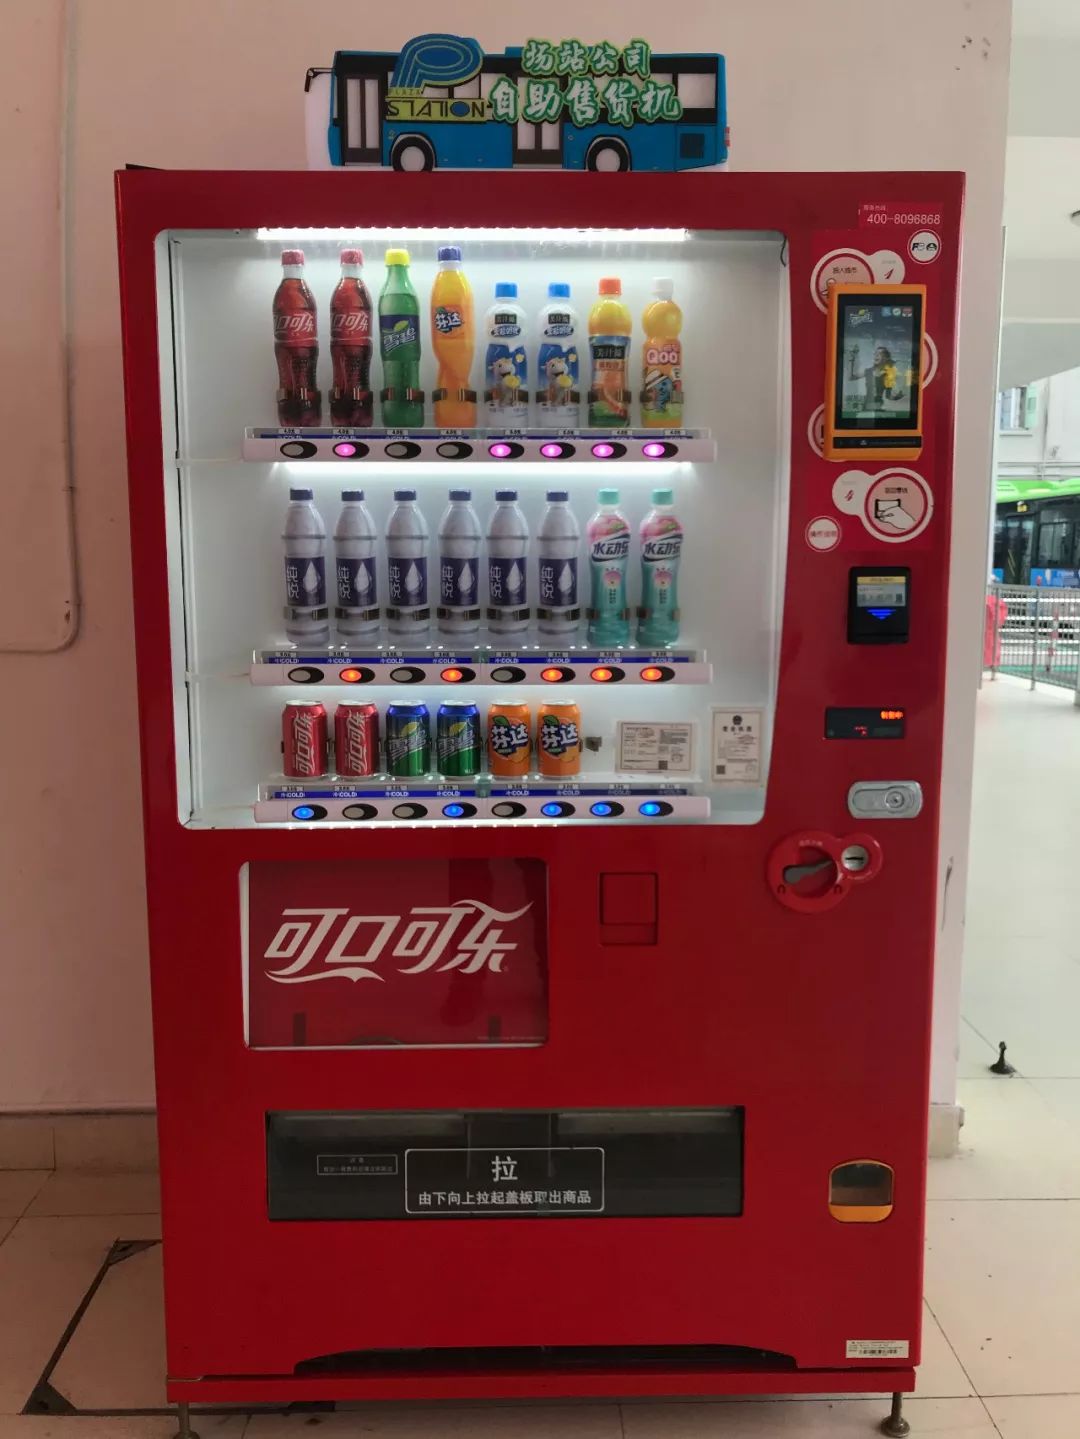 便民自动售货机全新上线市民可在9个公交场站购买饮料